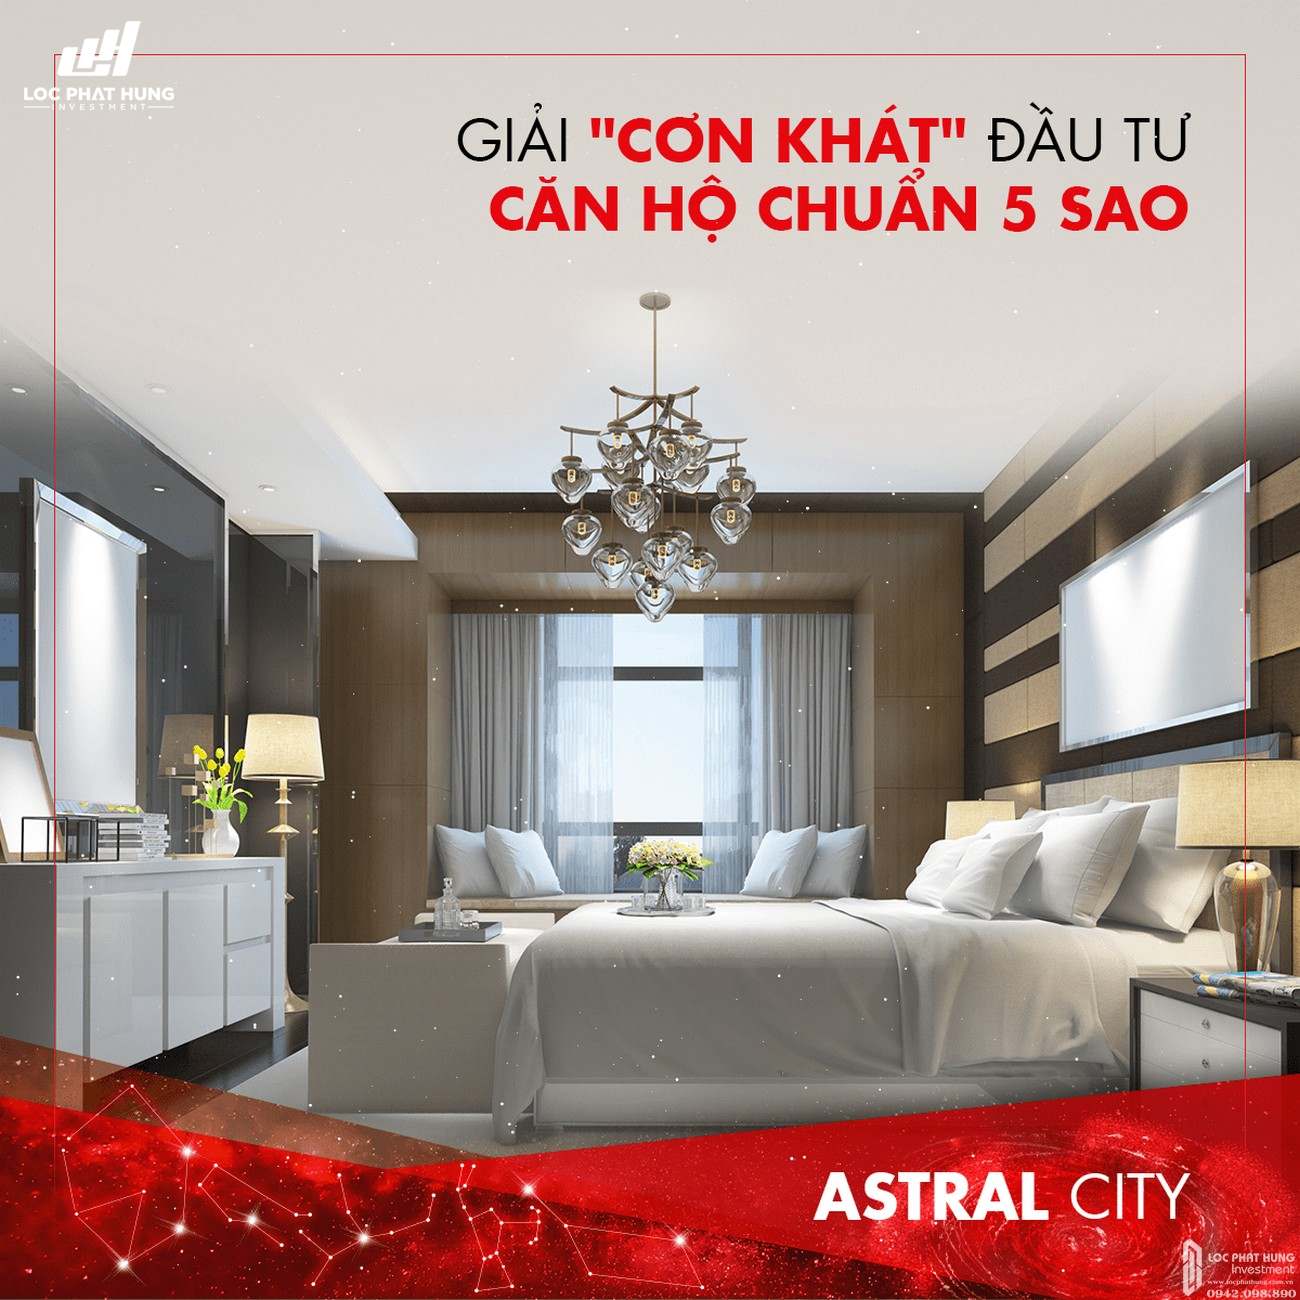 Tiêu chuẩn căn hộ 5 sao - cho thuê căn hộ  Astral City Bình Dương